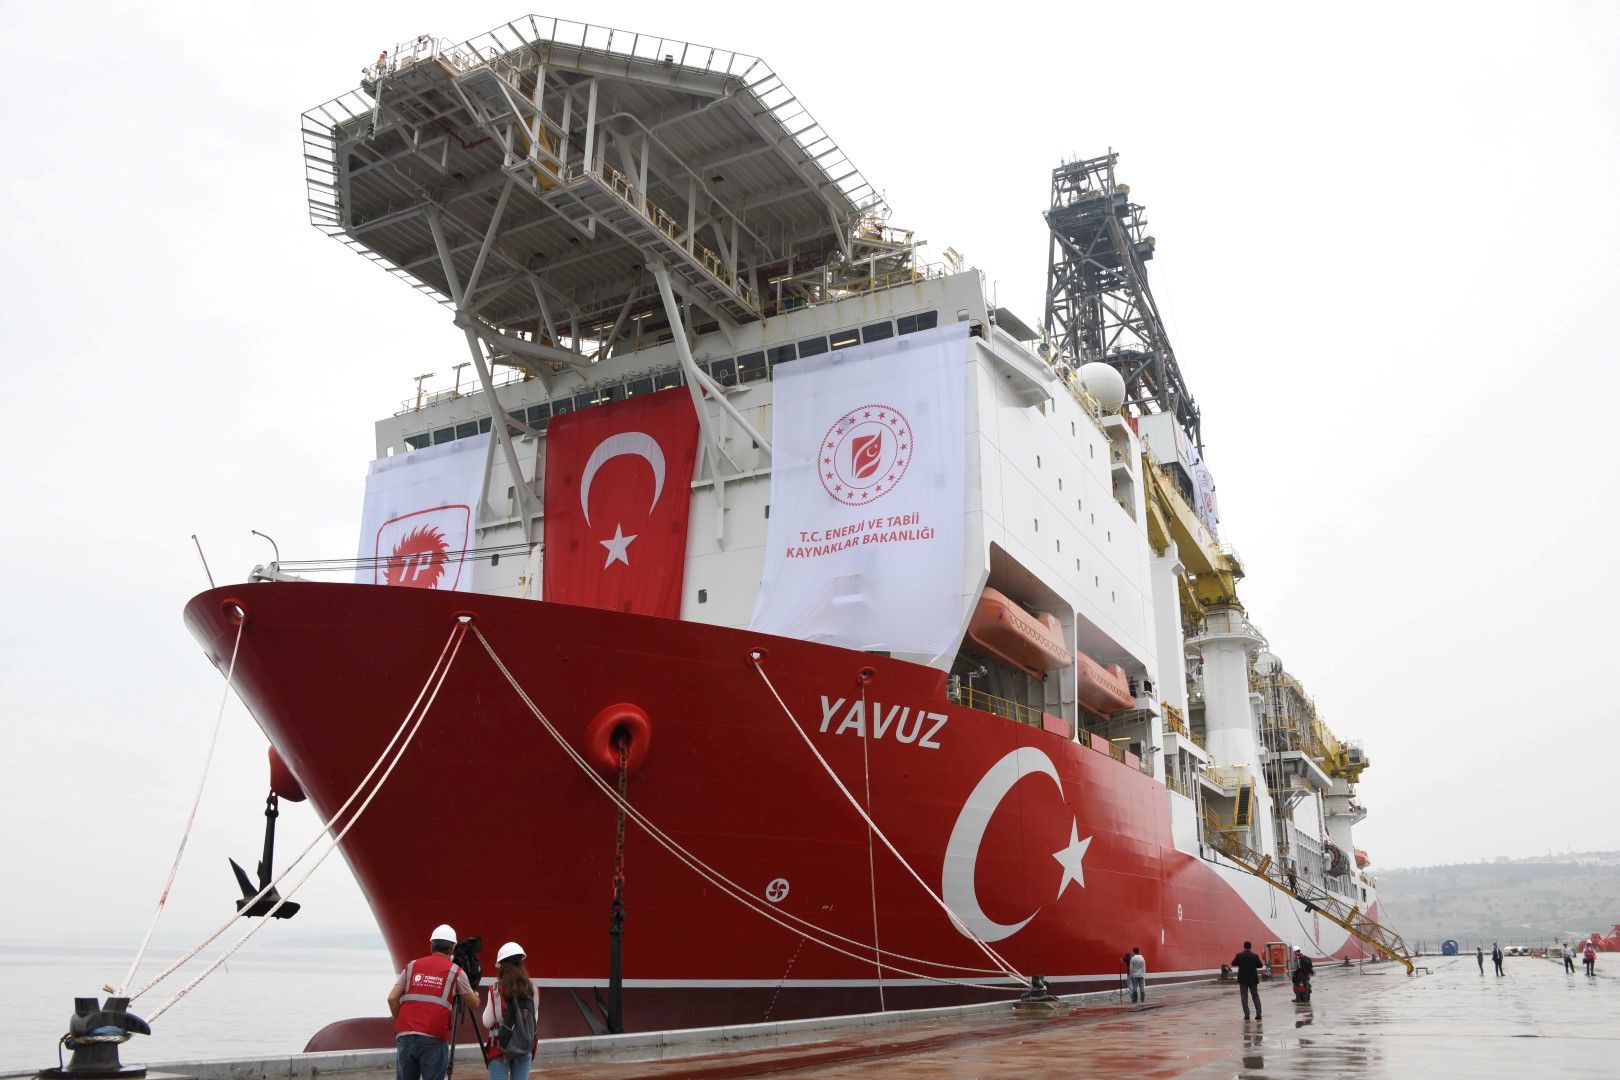 Сондажният кораб "Явуз" започва проучвания от 20 април, придружен от 3 спомагателни плавателни съда